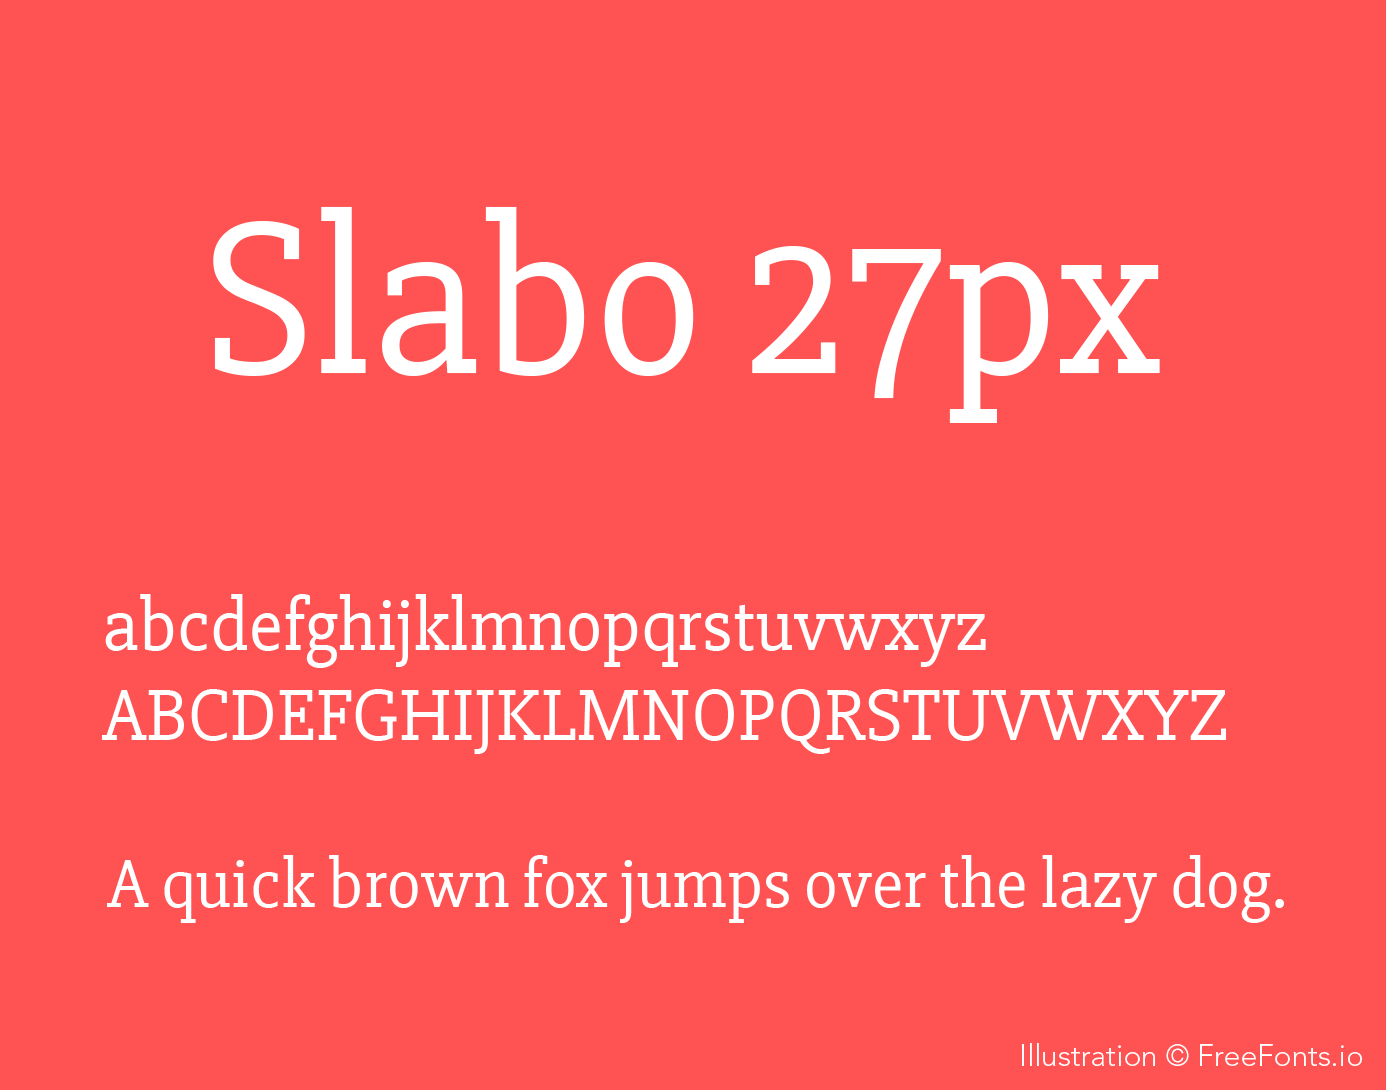 Beispiel einer Slabo 27px-Schriftart